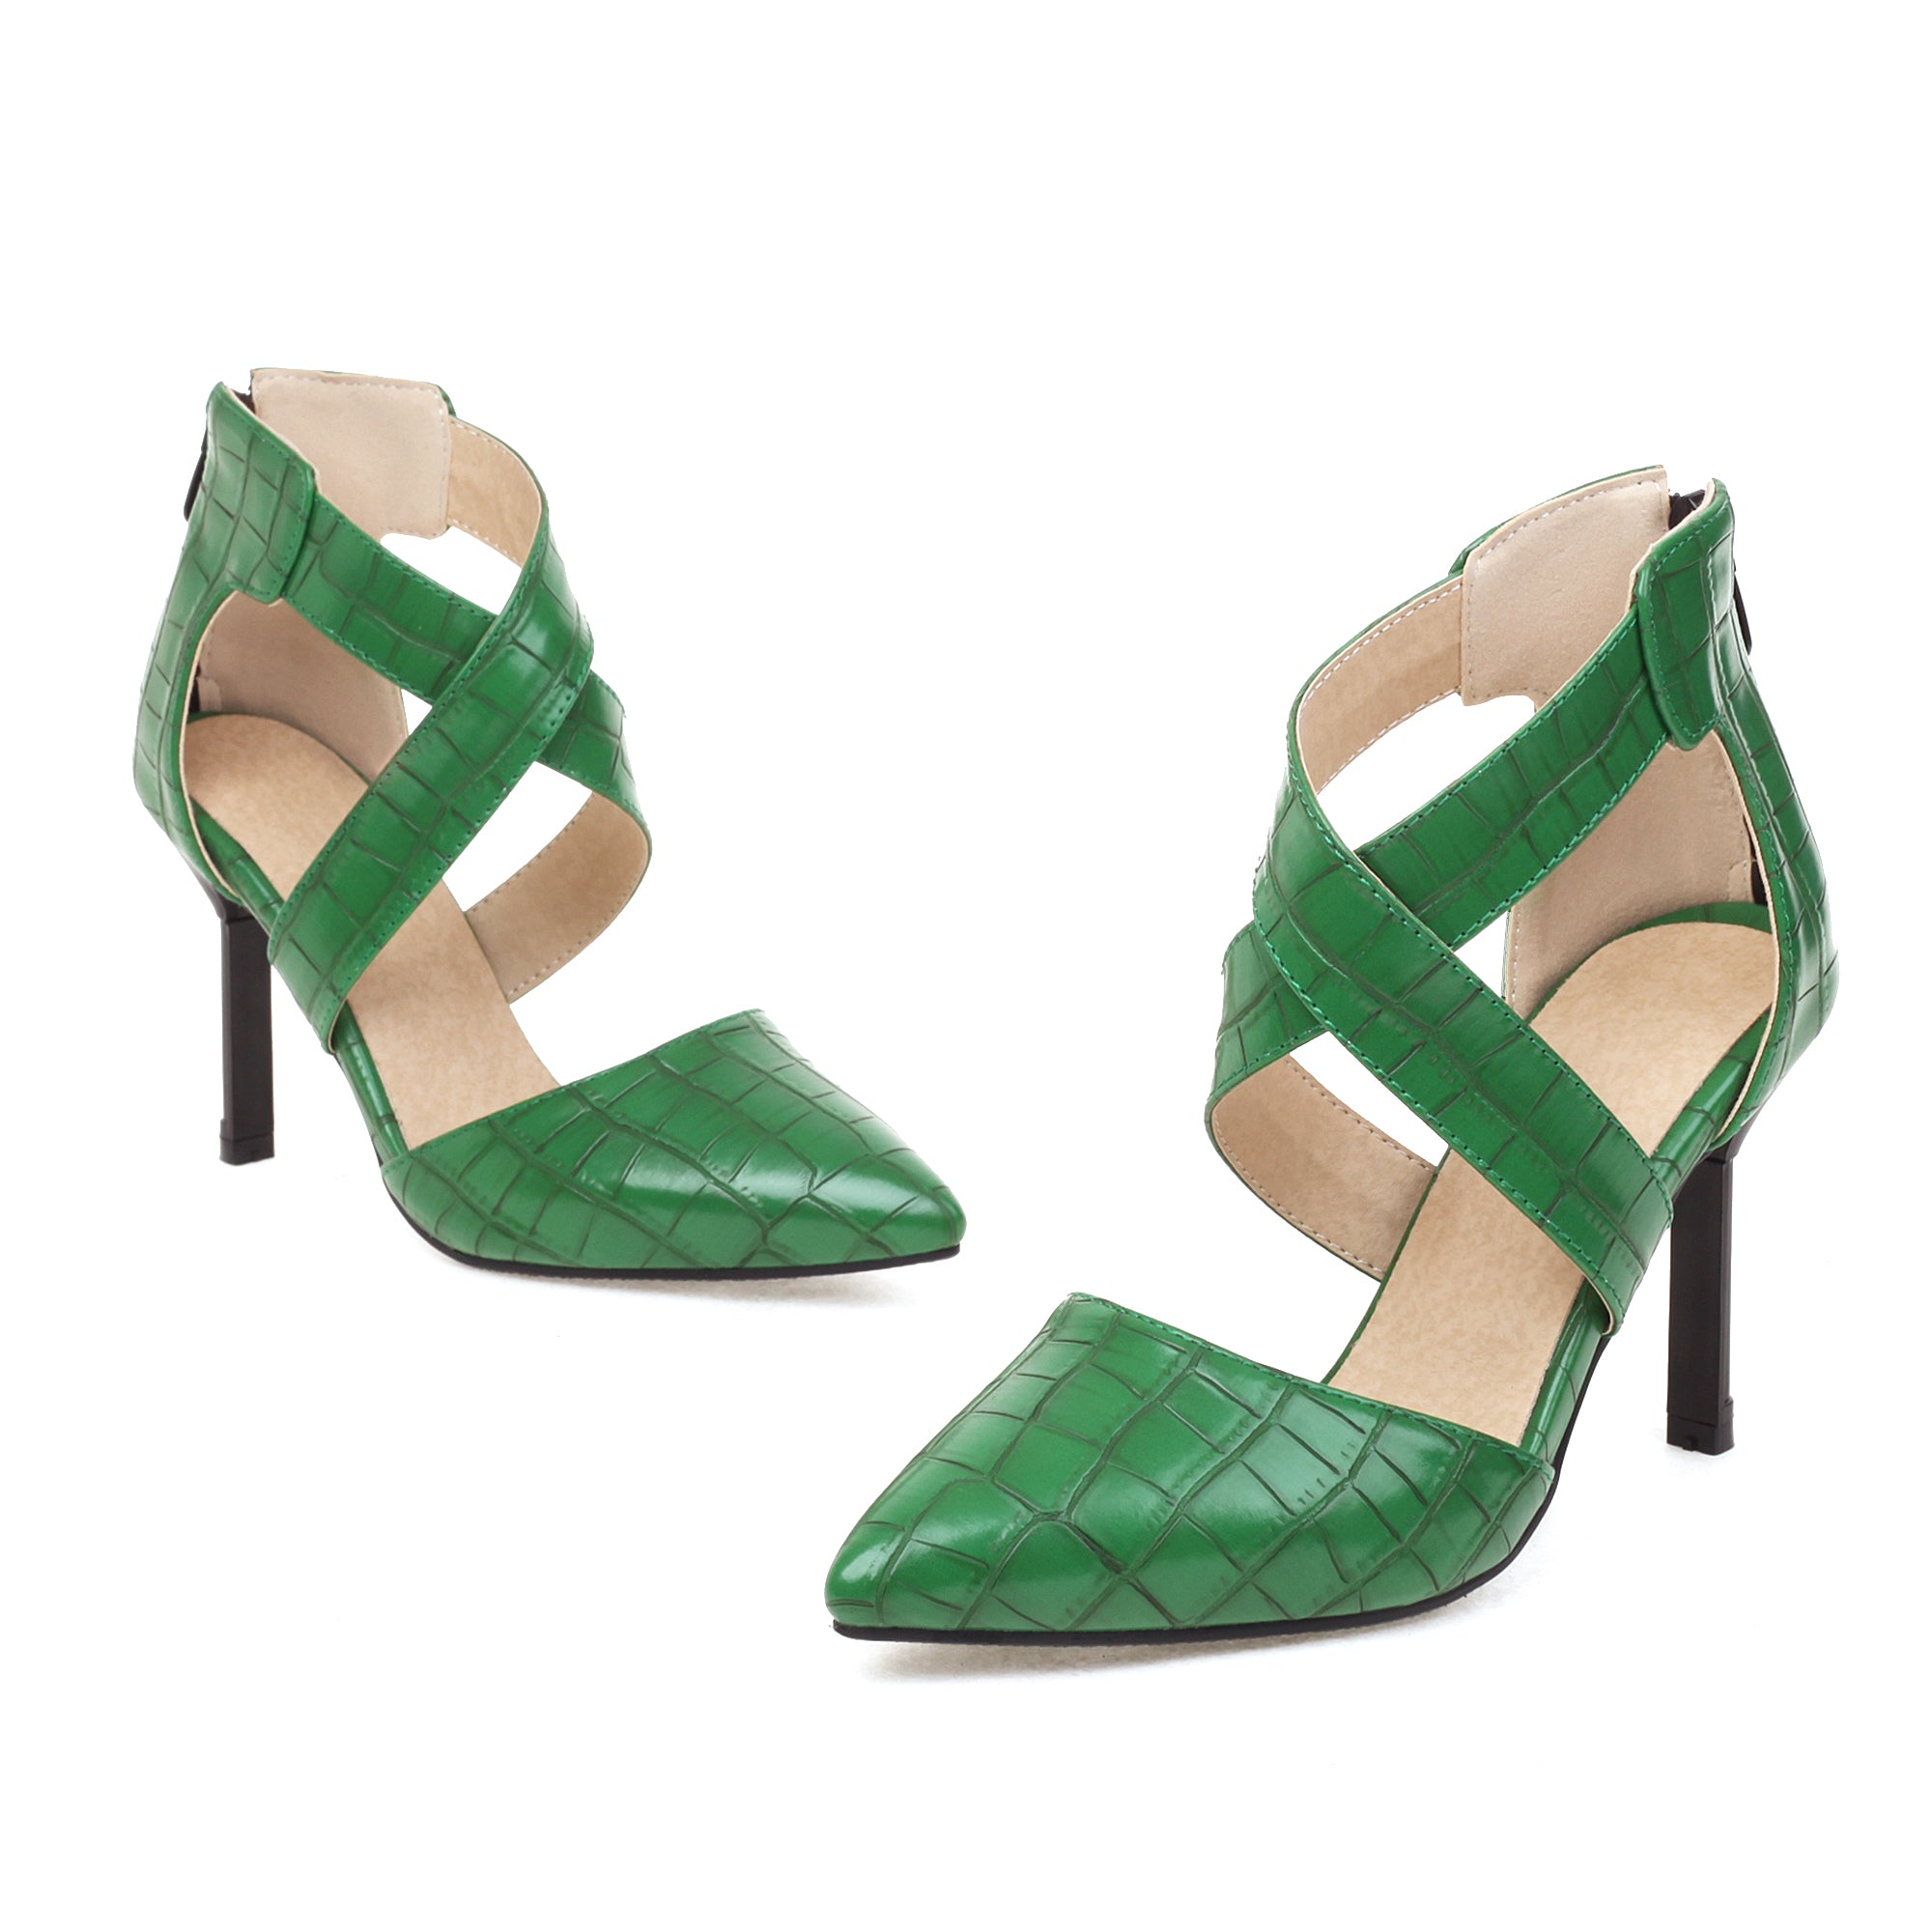 Bigsizeheels Cross Strap Pointed Toe Stiletto Heels Sandals - Green best oversized womens heels from bigsizeheel®